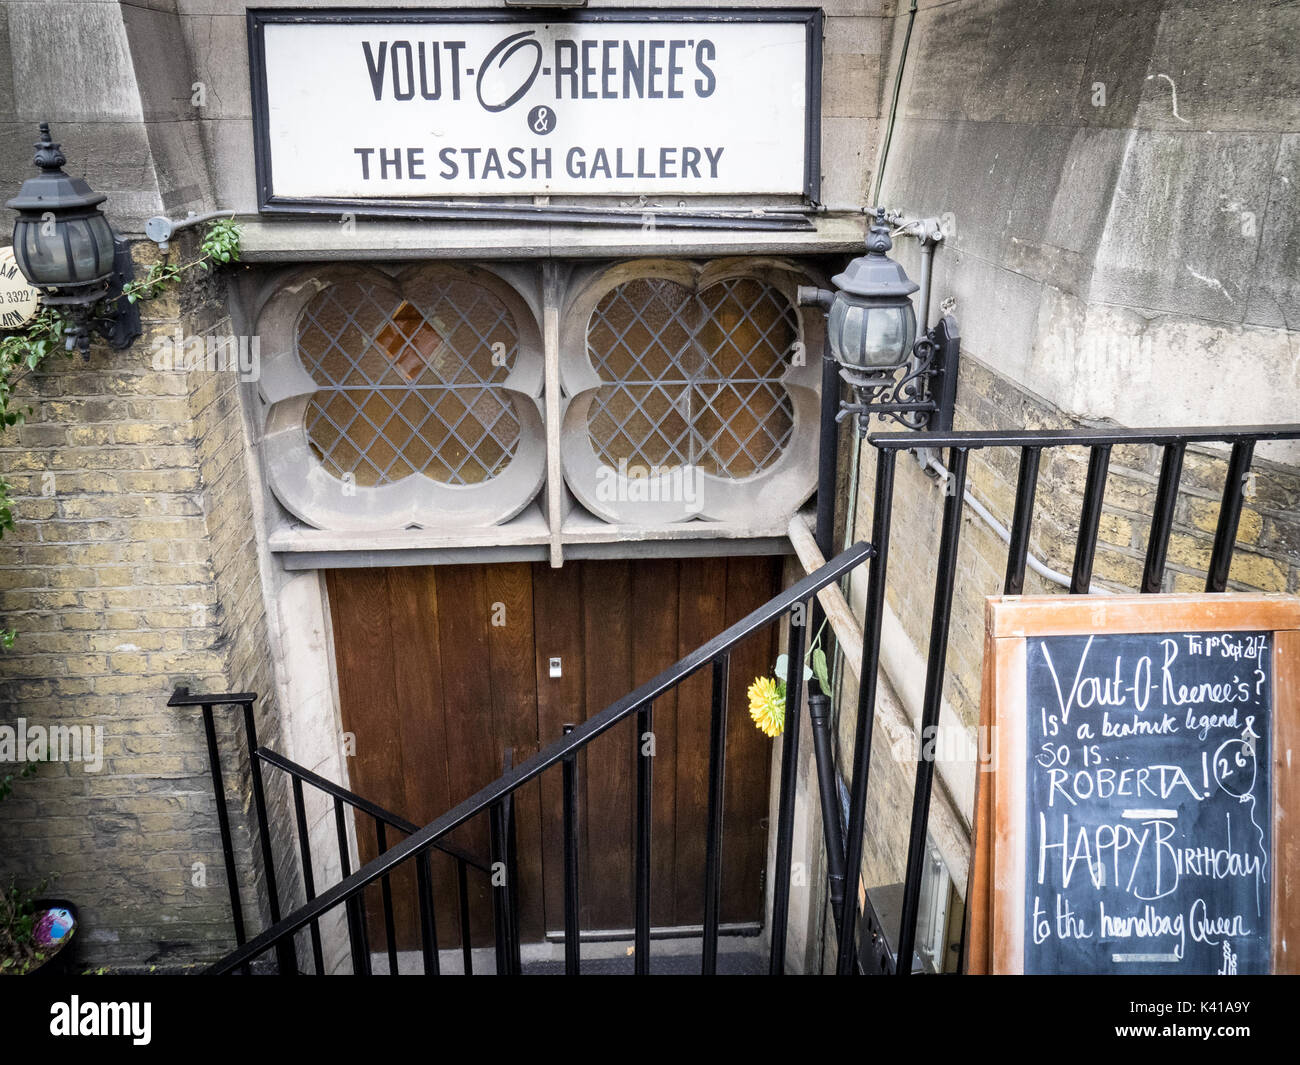 Vout-O-Reenee's - un club de miembros privados surrealistas y galería de arte situada en la cripta, Prescott Street, East London. Foto de stock